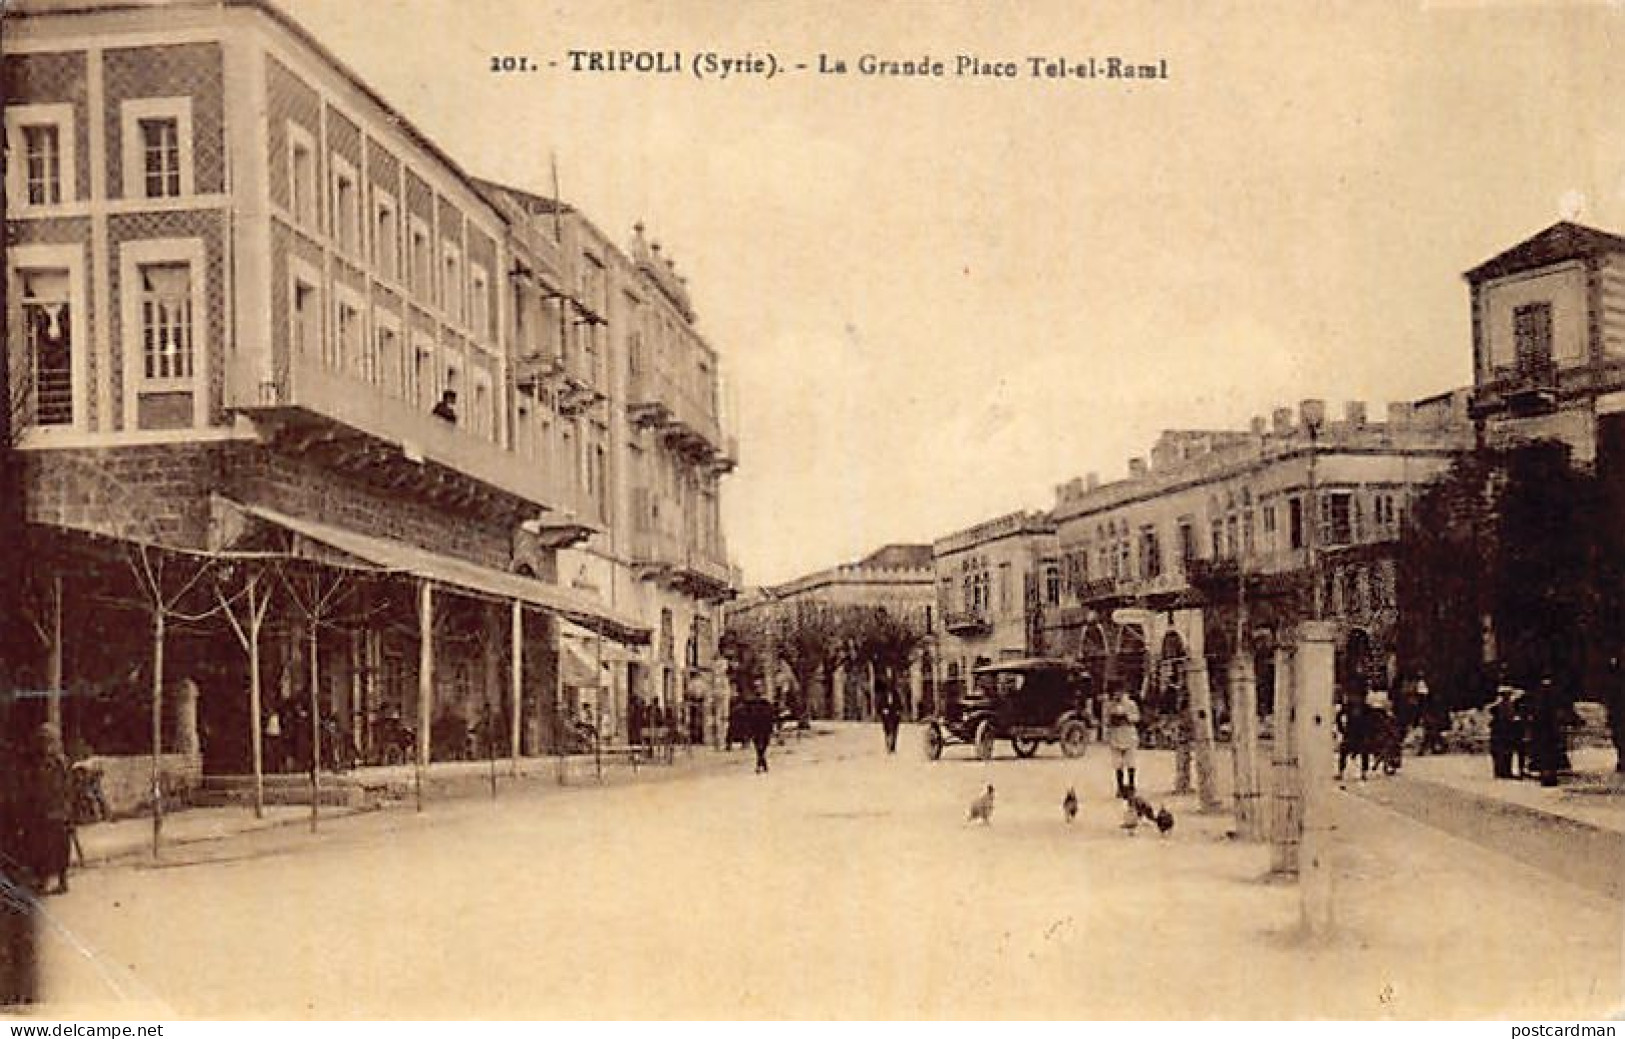 Liban - TRIPOLI - La Grande Place Tel-el-Raml - Ed. Wattar Frères 201 - Libanon